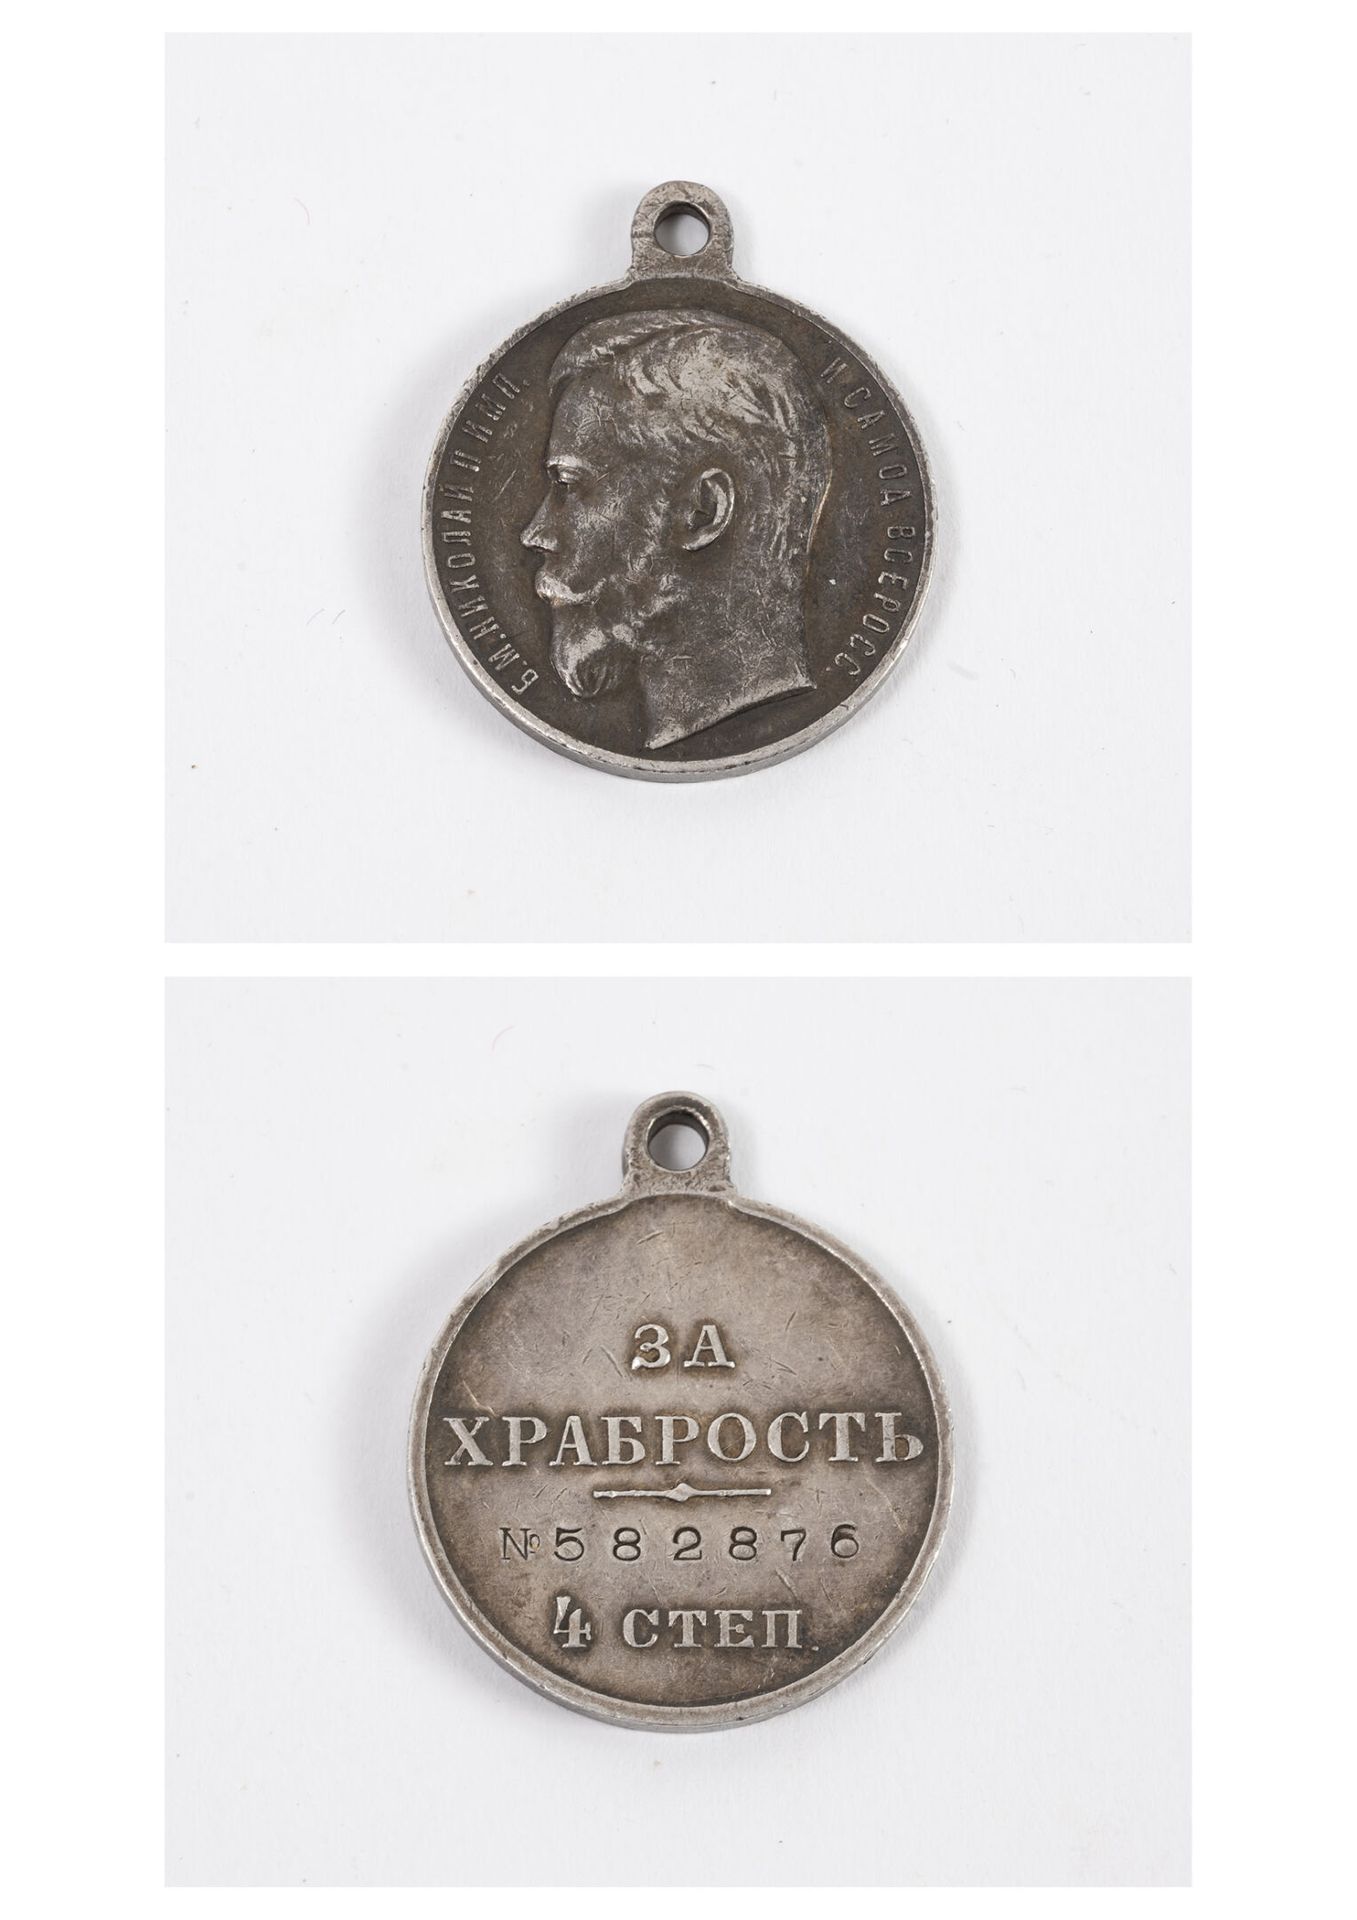 RUSSIE IMPERIALE Ordine di San Giorgio. 
Medaglia d'argento (min. 800) di 4a cla&hellip;